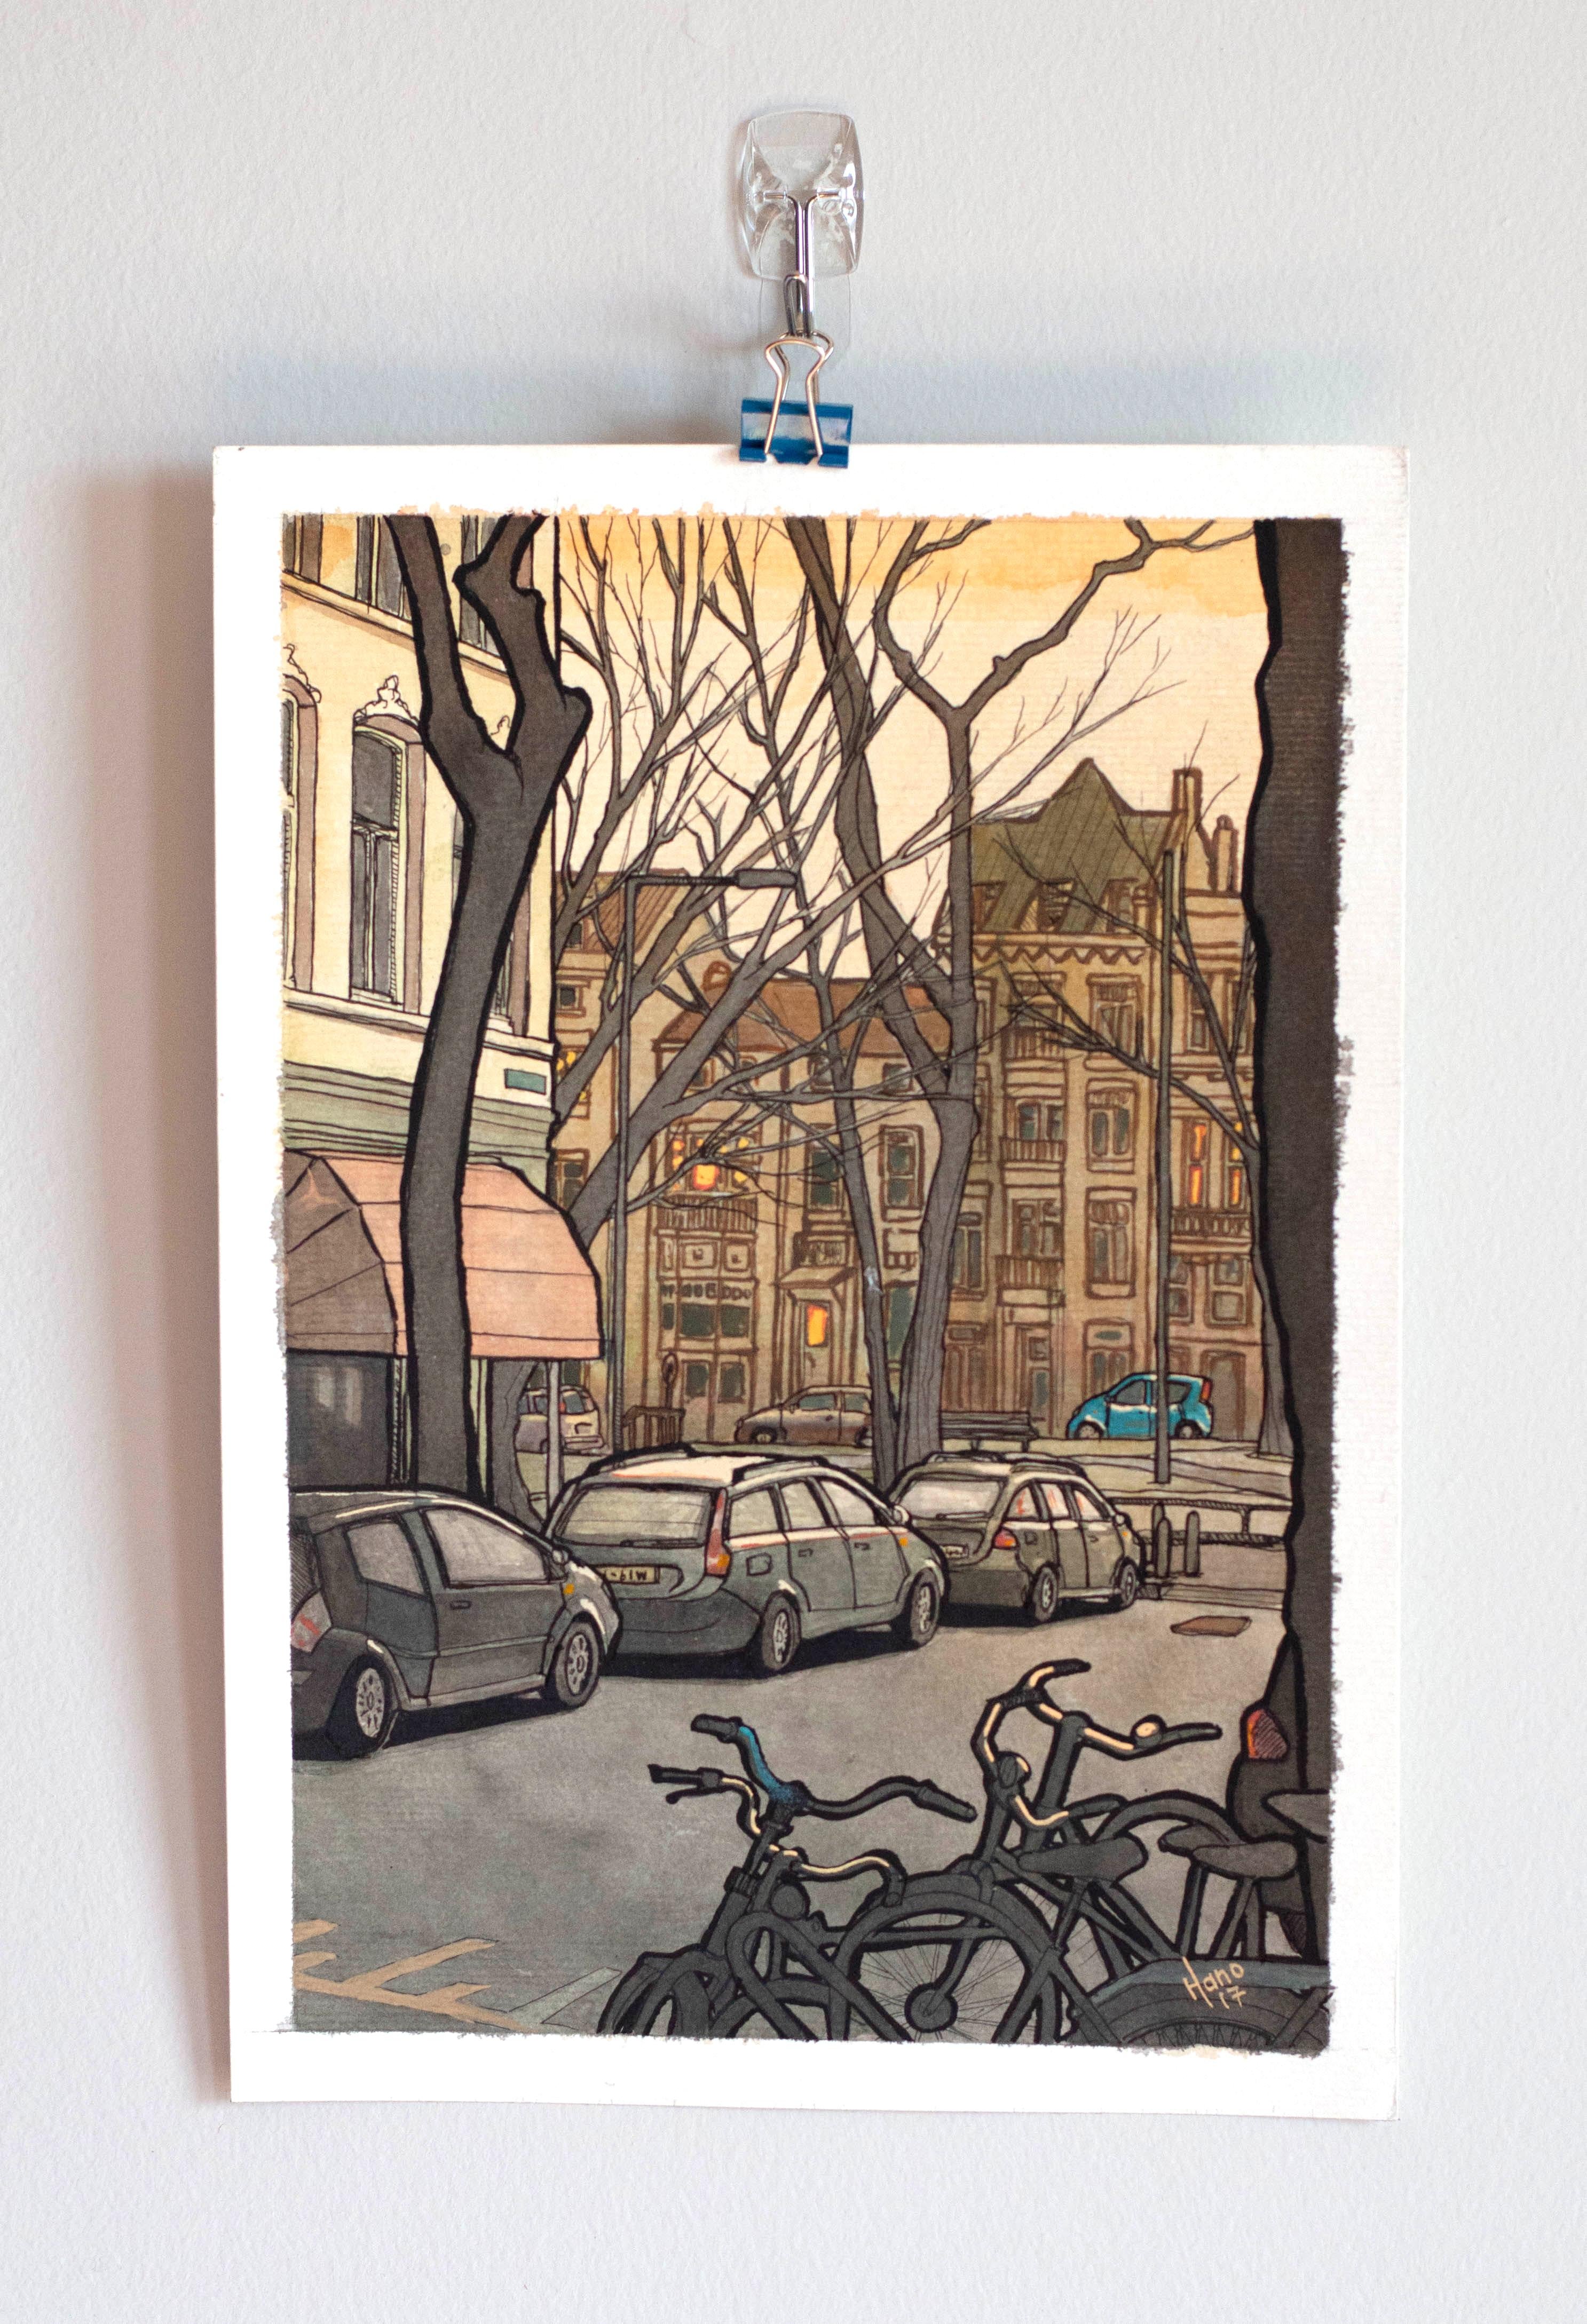 Rotterdam Streets, Original Painting - Contemporary Mixed Media Art by Hano Dercksen